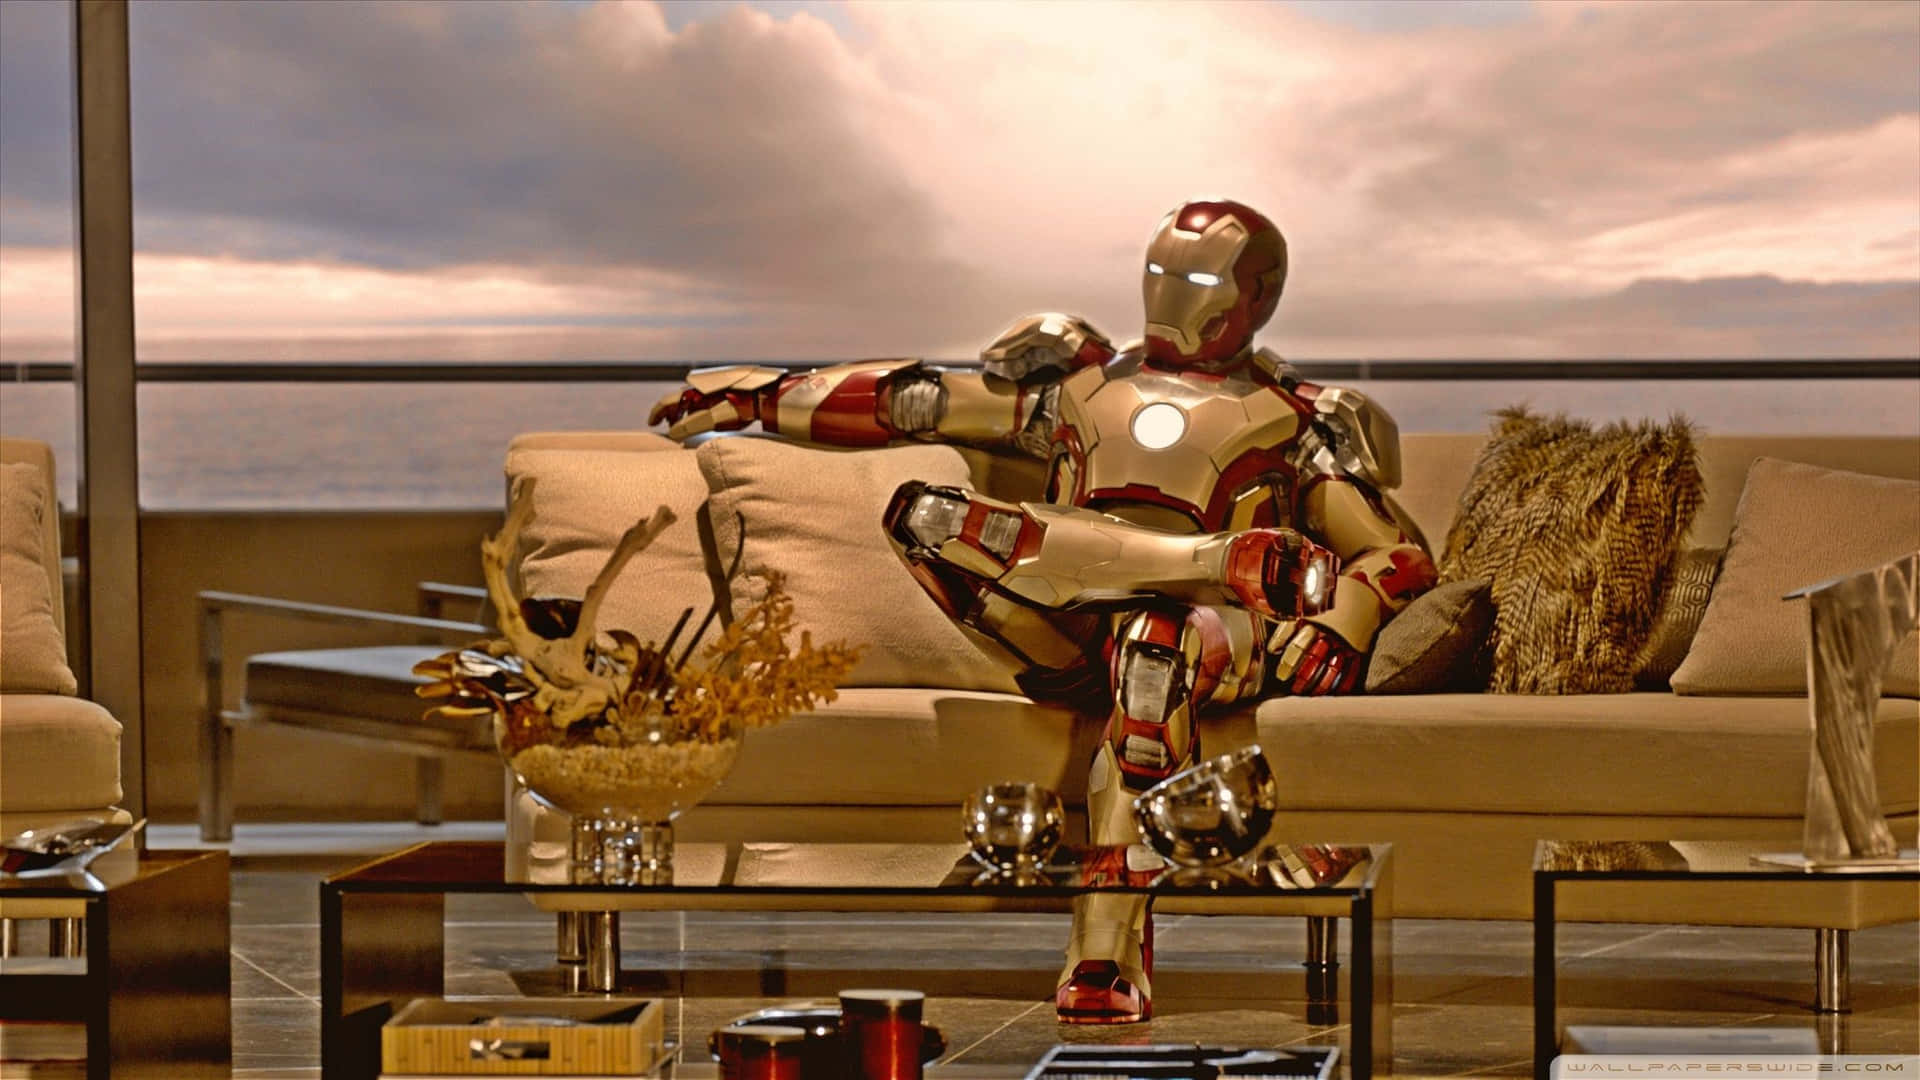 Iron Man 3 - Avengers 3 Wallpaper